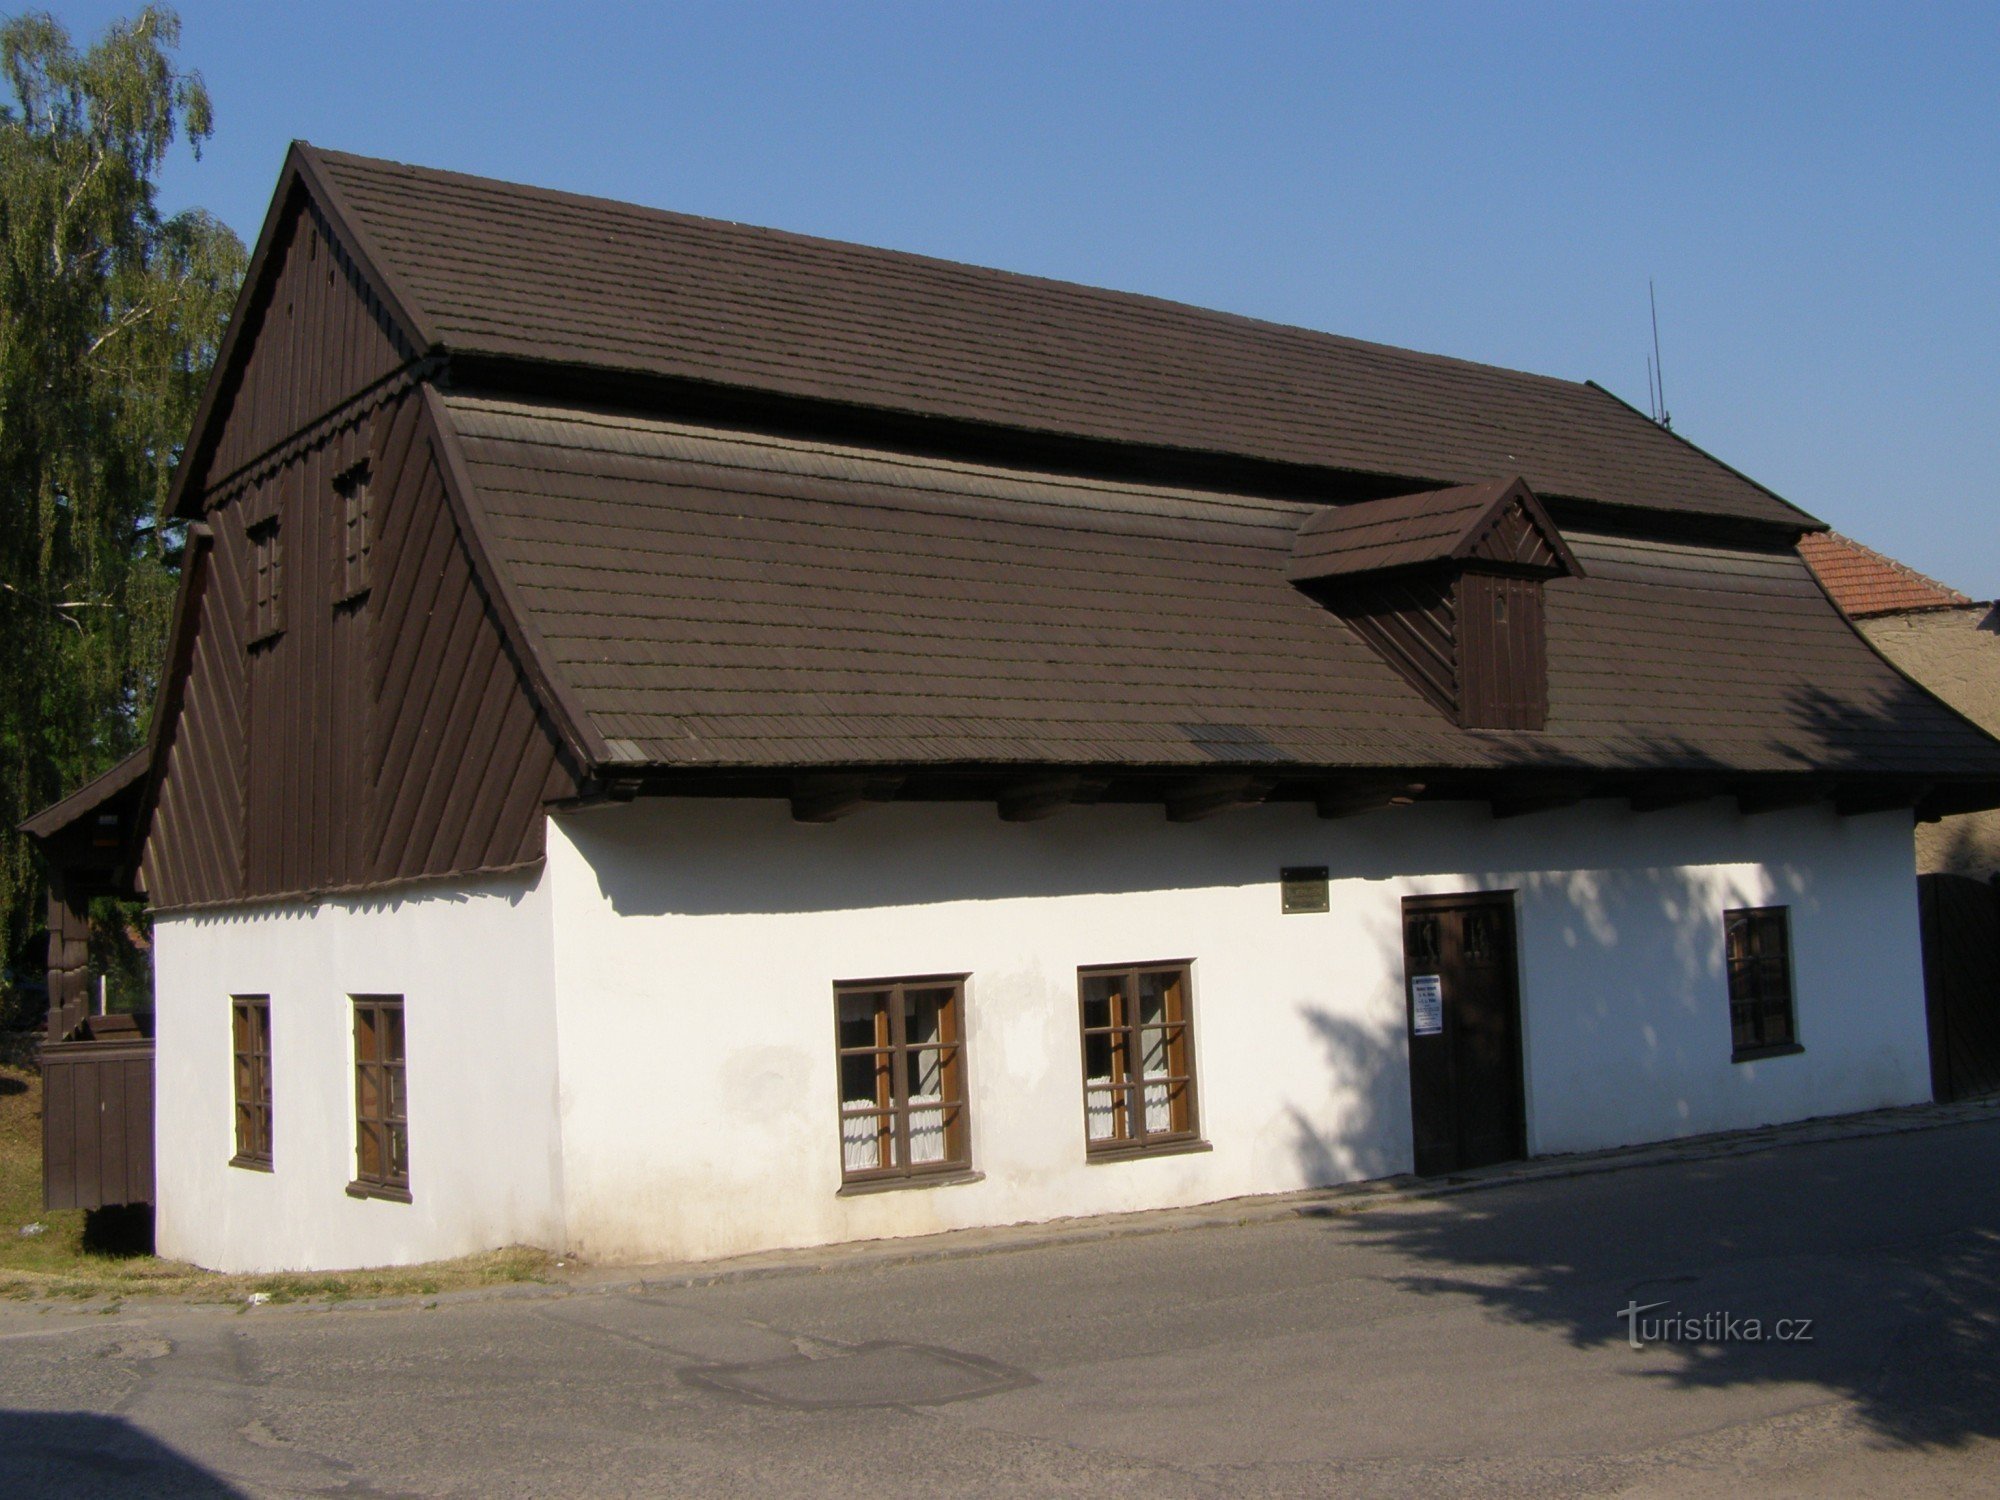 ドブルシュカ - FLVěk (ヘカ) の発祥の地